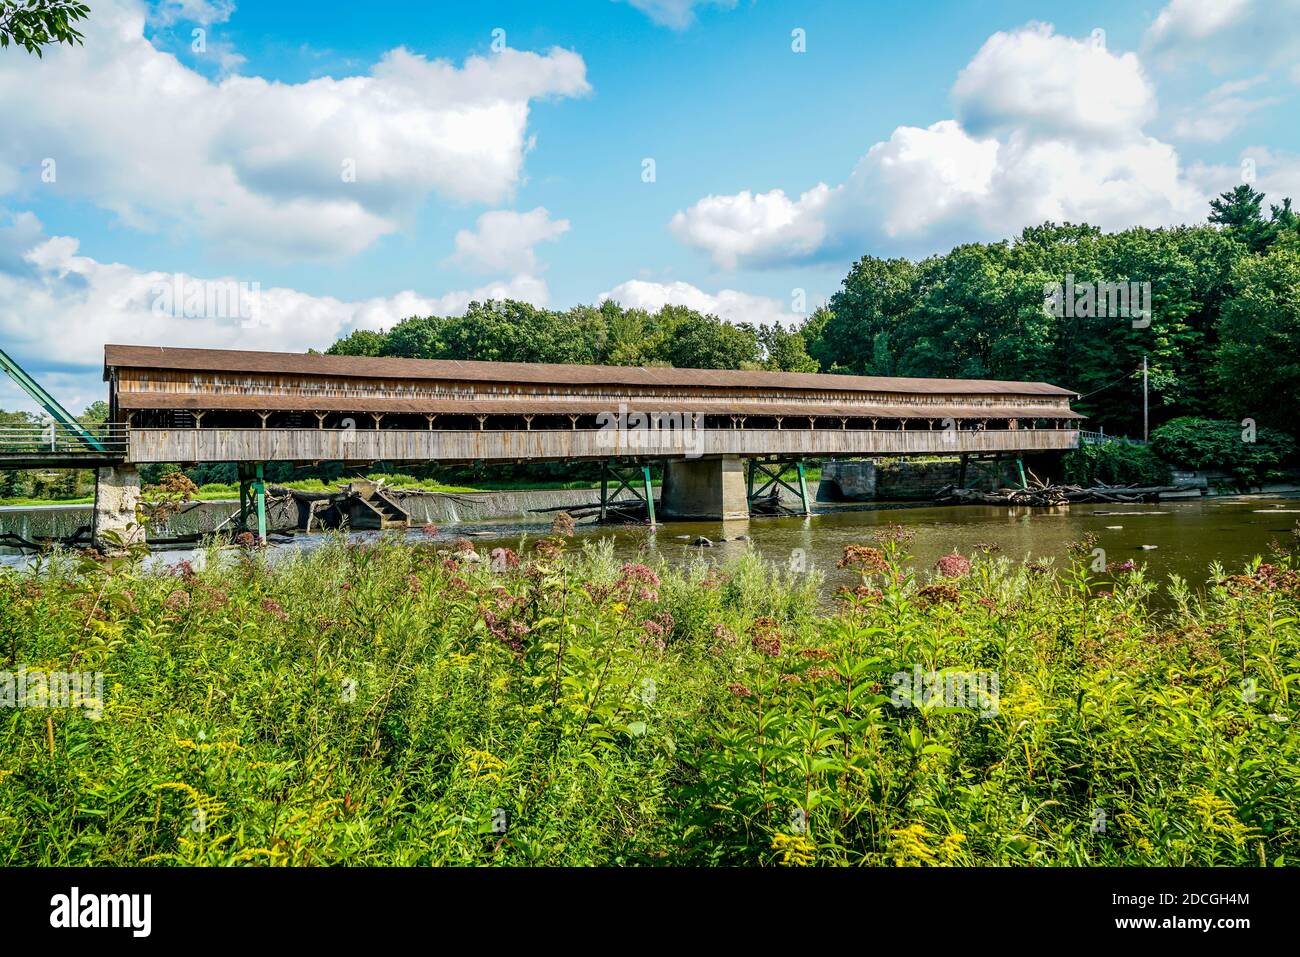 Le pont couvert Harpersfield dans le nord-est de l'Ohio a plus de 100 ans. Banque D'Images